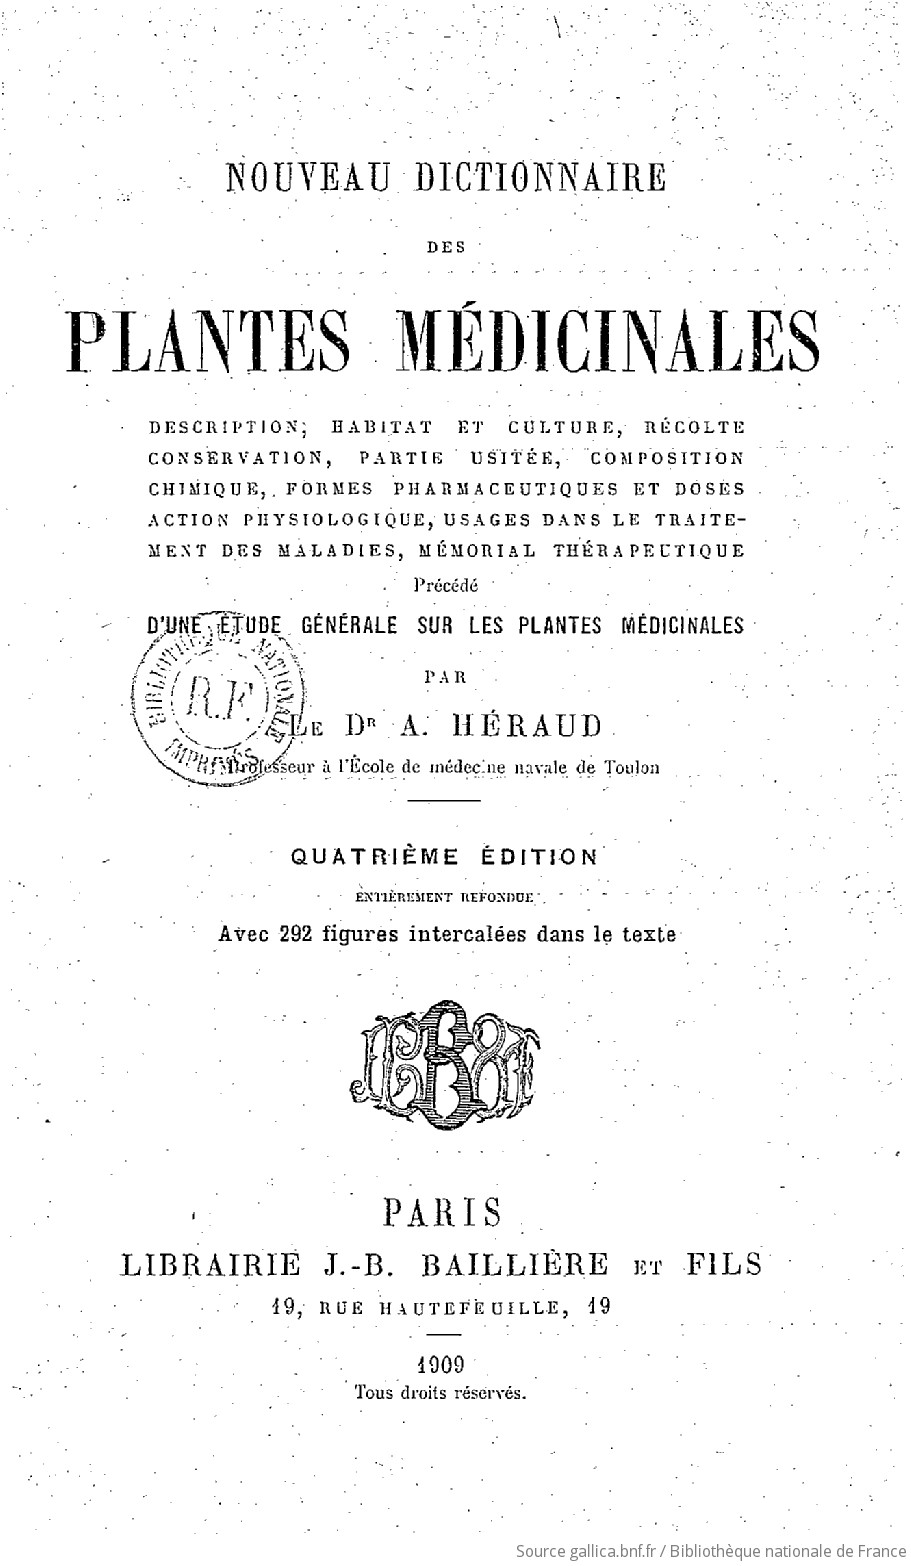 [PDF] Ouvrages anciens: Plantes potagéres,médicinales .... F4